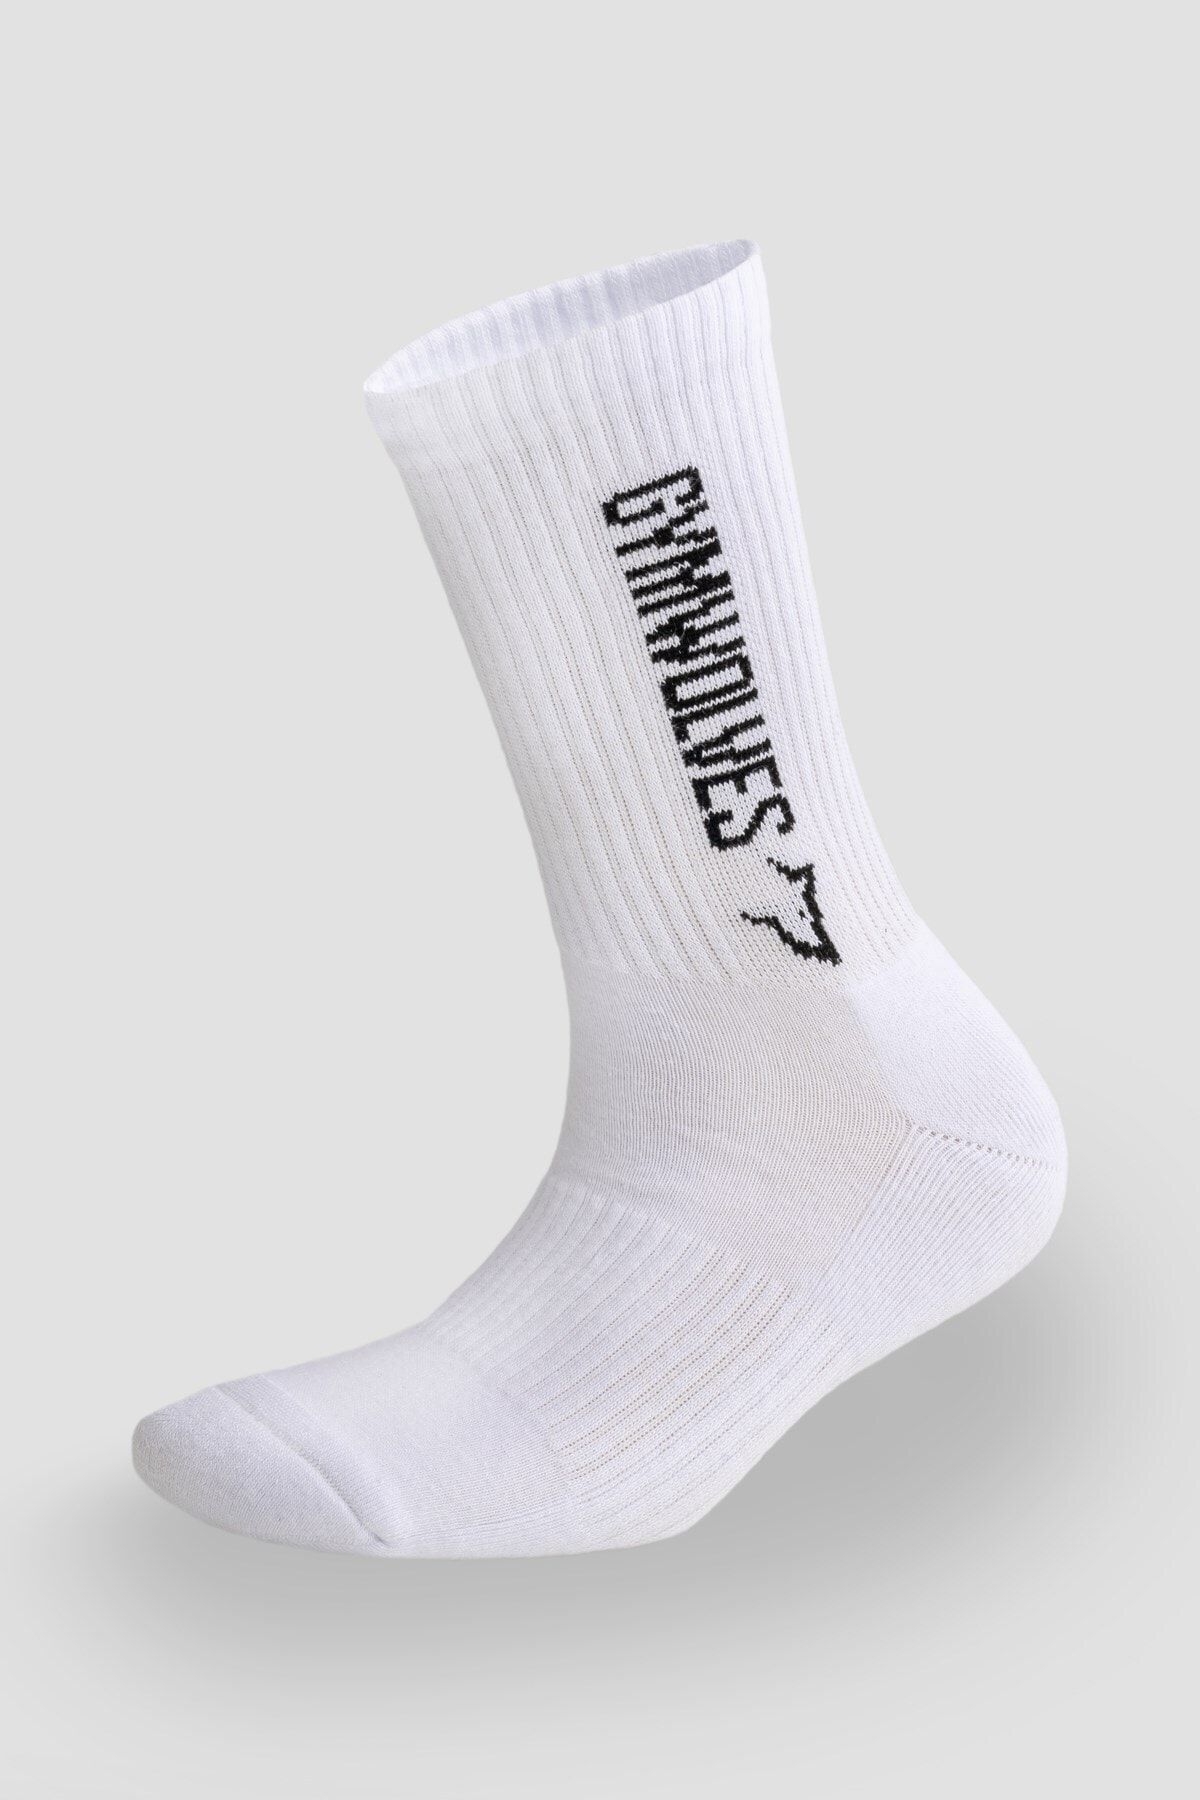 Gymwolves Atlatik Spor Çorap | Unisex Çorap Sock